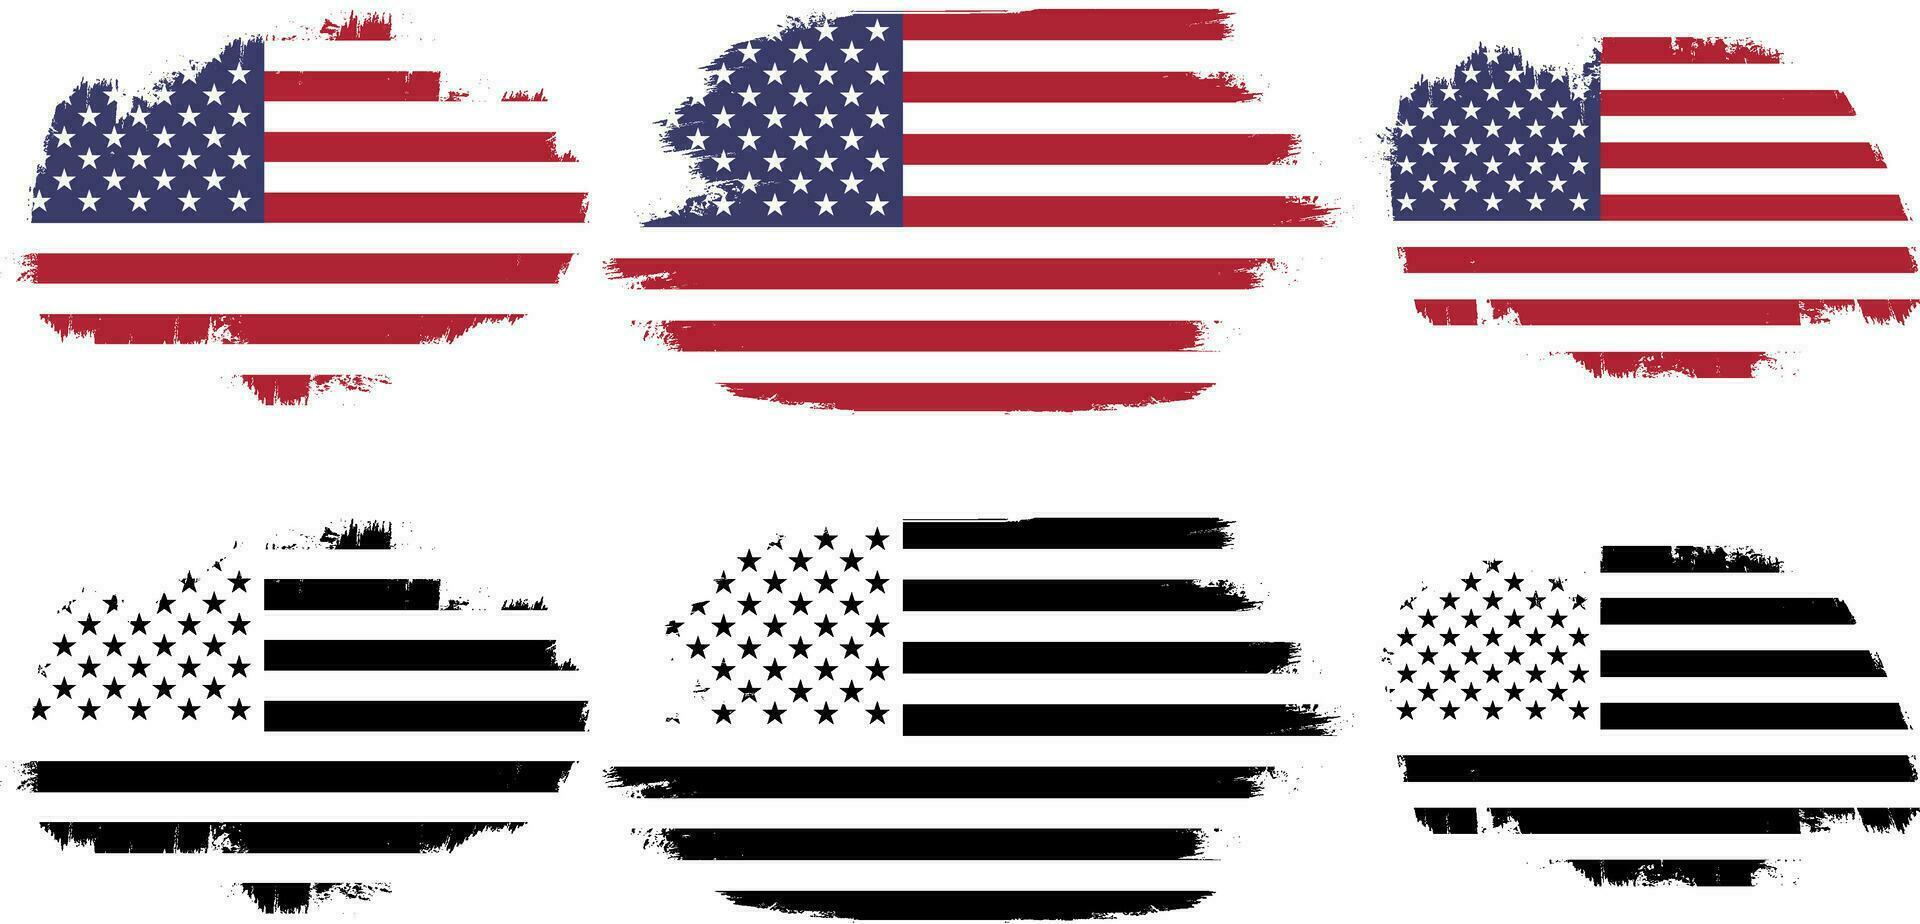 impostato di Stati Uniti d'America fattoria bandiera, grunge Stati Uniti d'America bandiera impostato vettore, grunge, bandiera, silhouette, indipendenza, luglio, 4 ° di luglio, 4 ° luglio, bandiera silhouette vettore